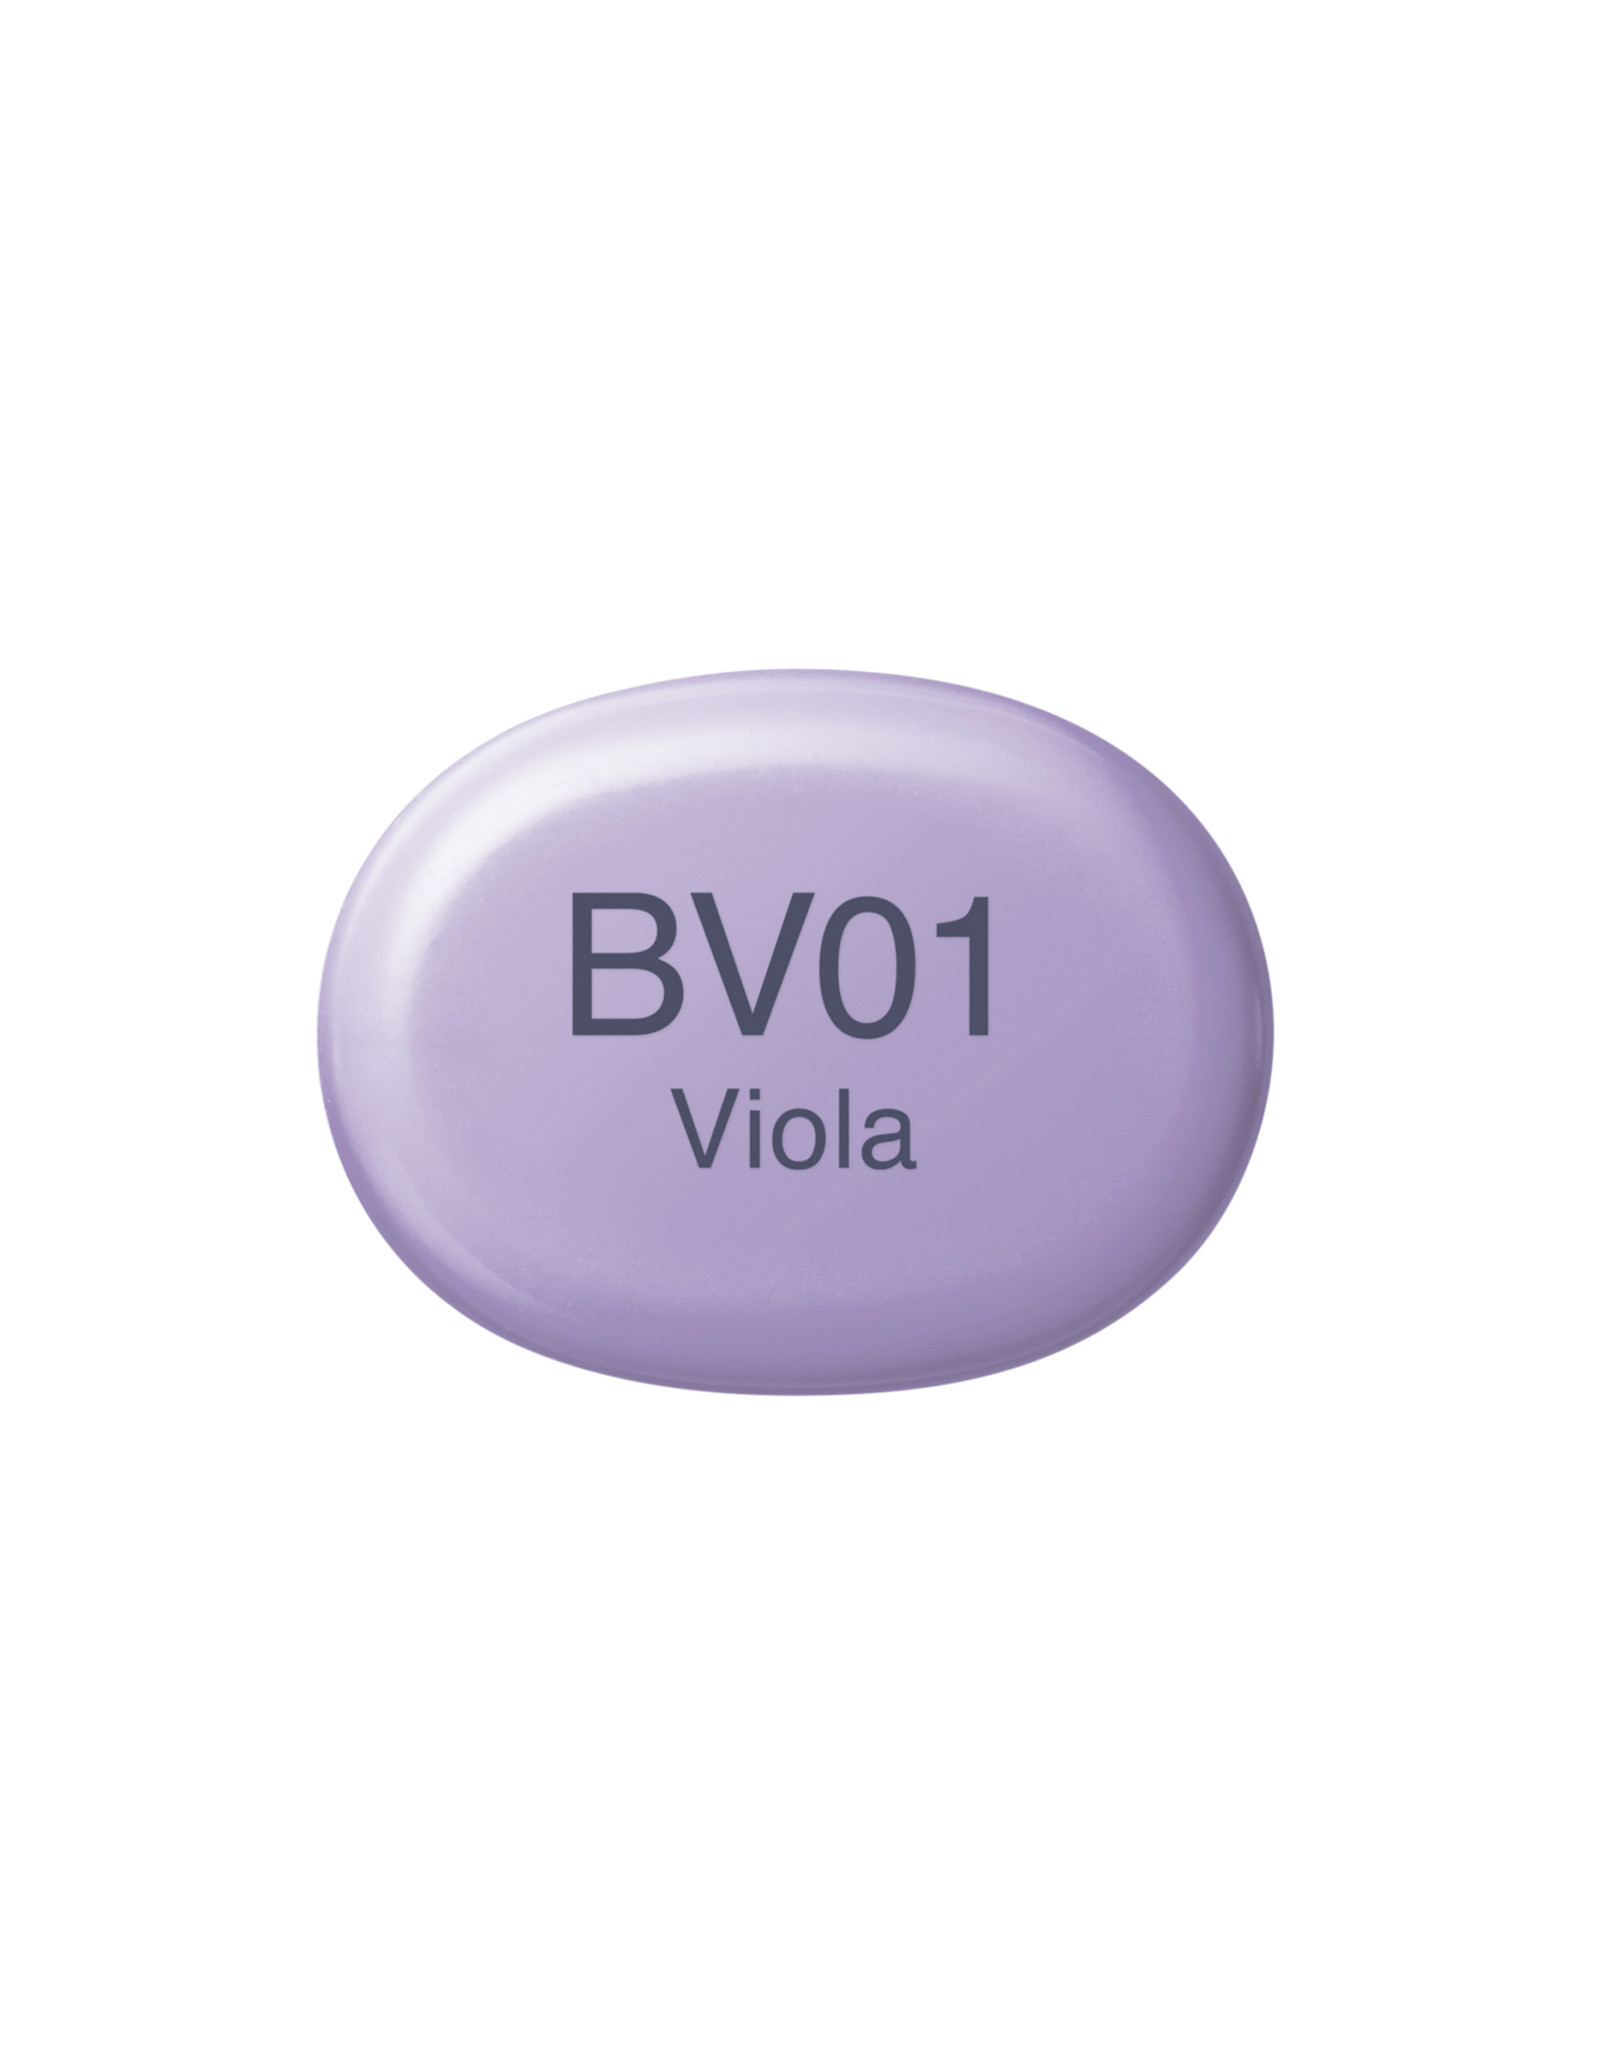 COPIC COPIC Sketch Marker BV01 Viola